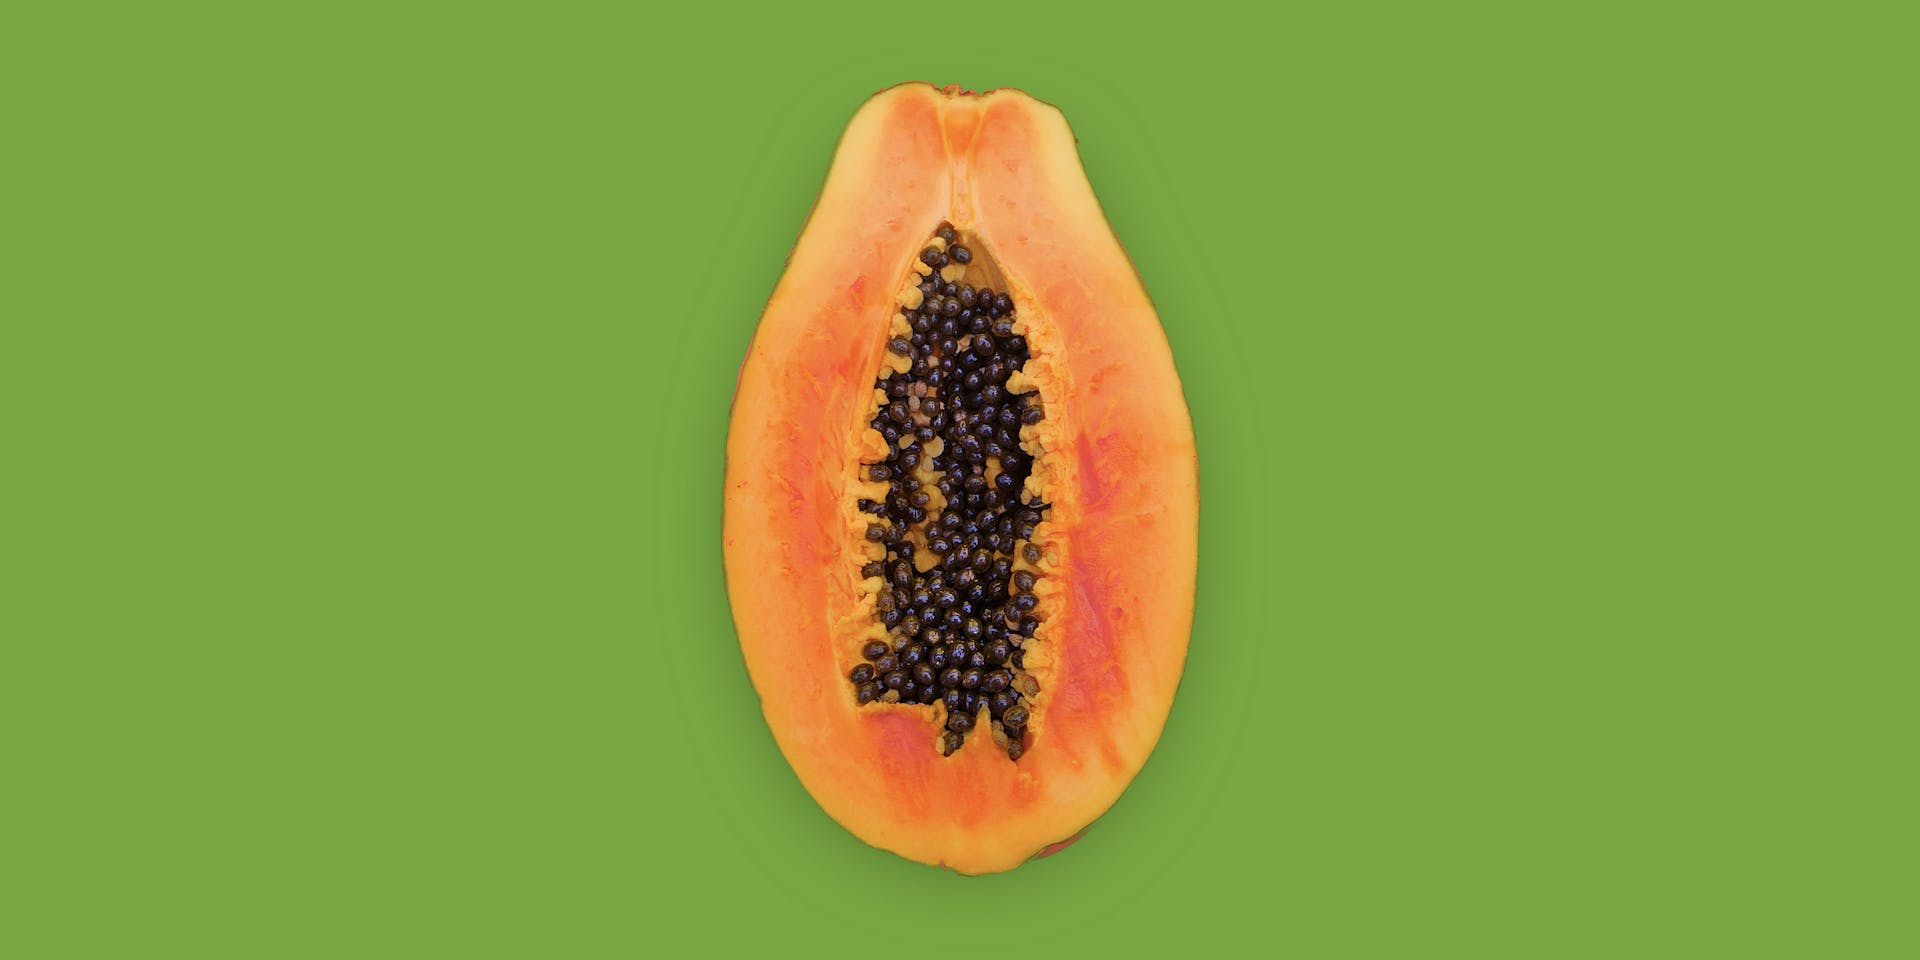 Una papaya anaranjada cortada por la mitad descansa sobre un fondo verde hierba